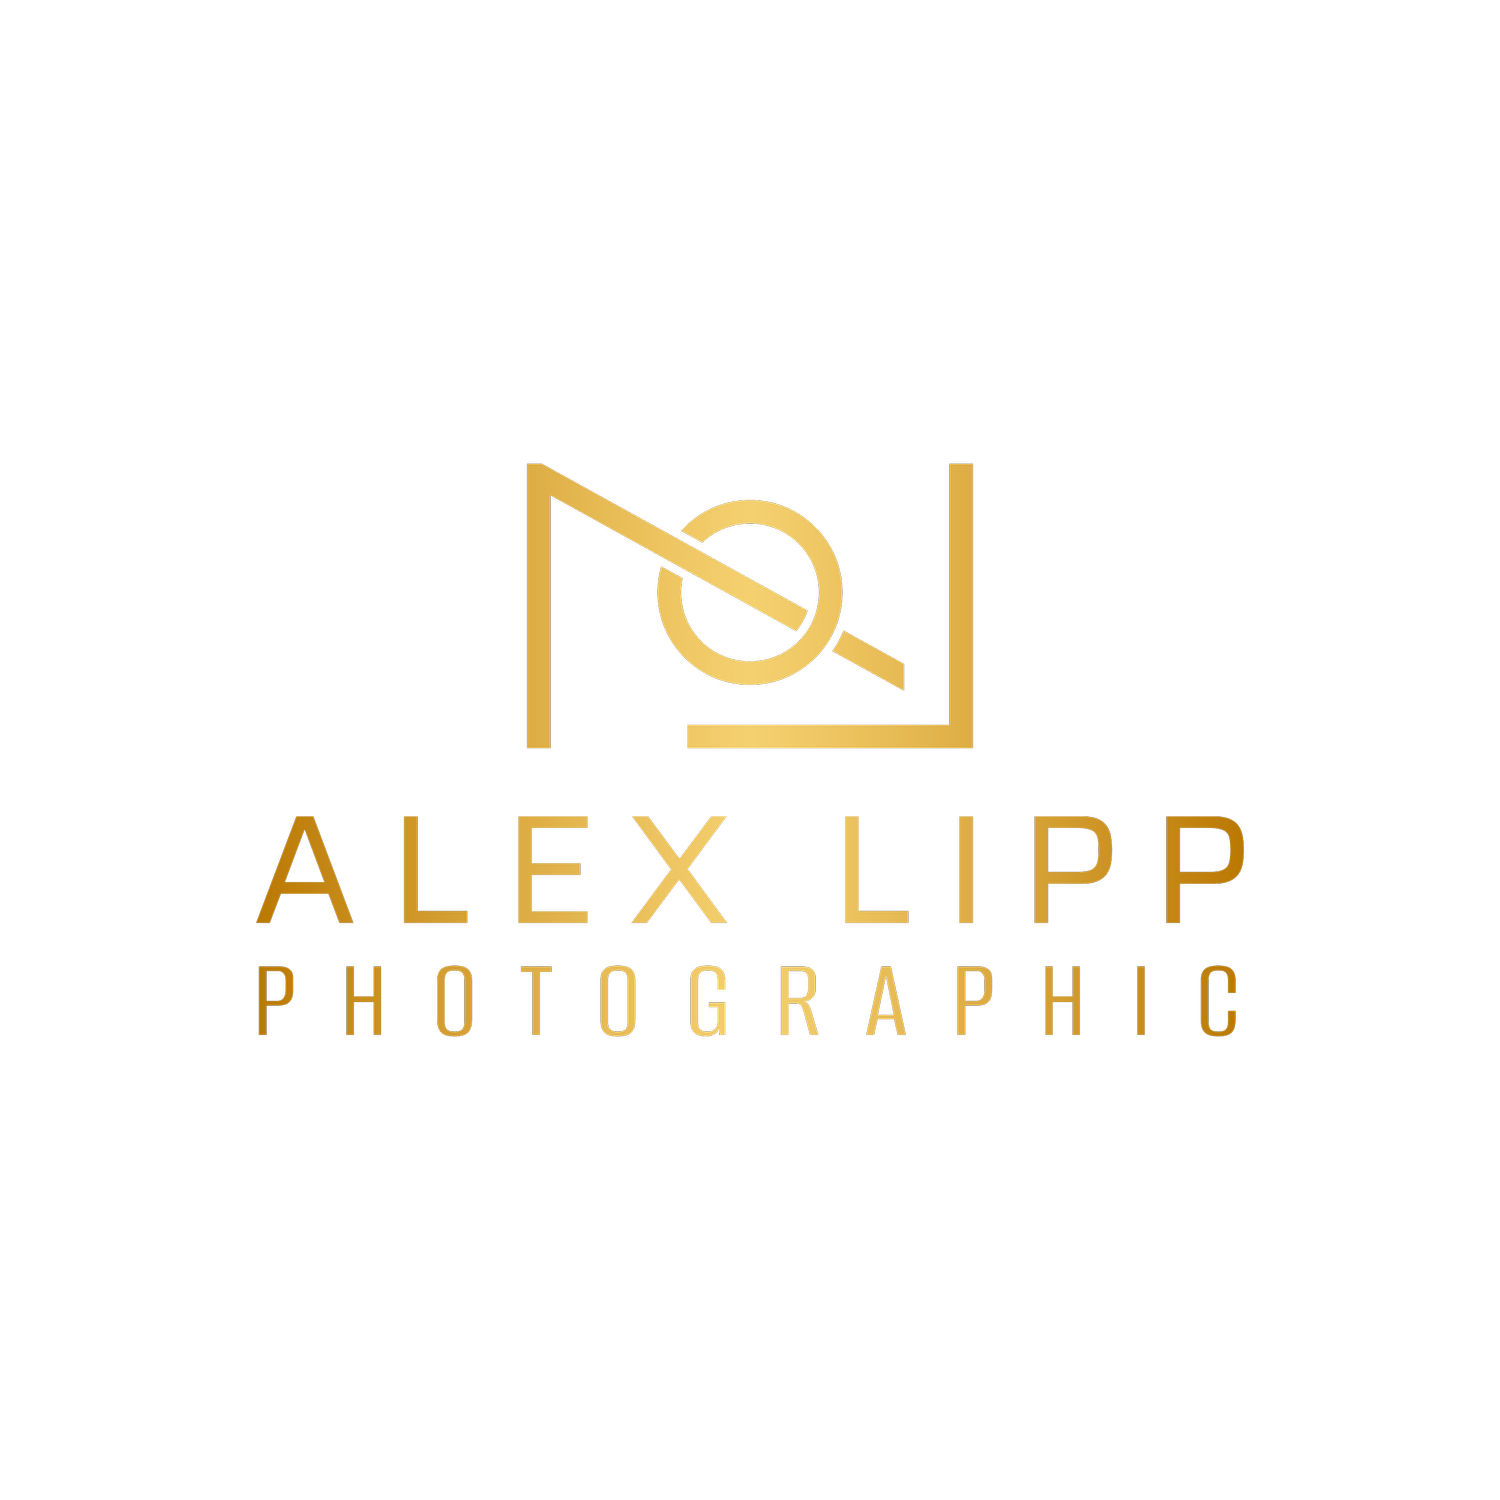 Alex Lipp Photographic